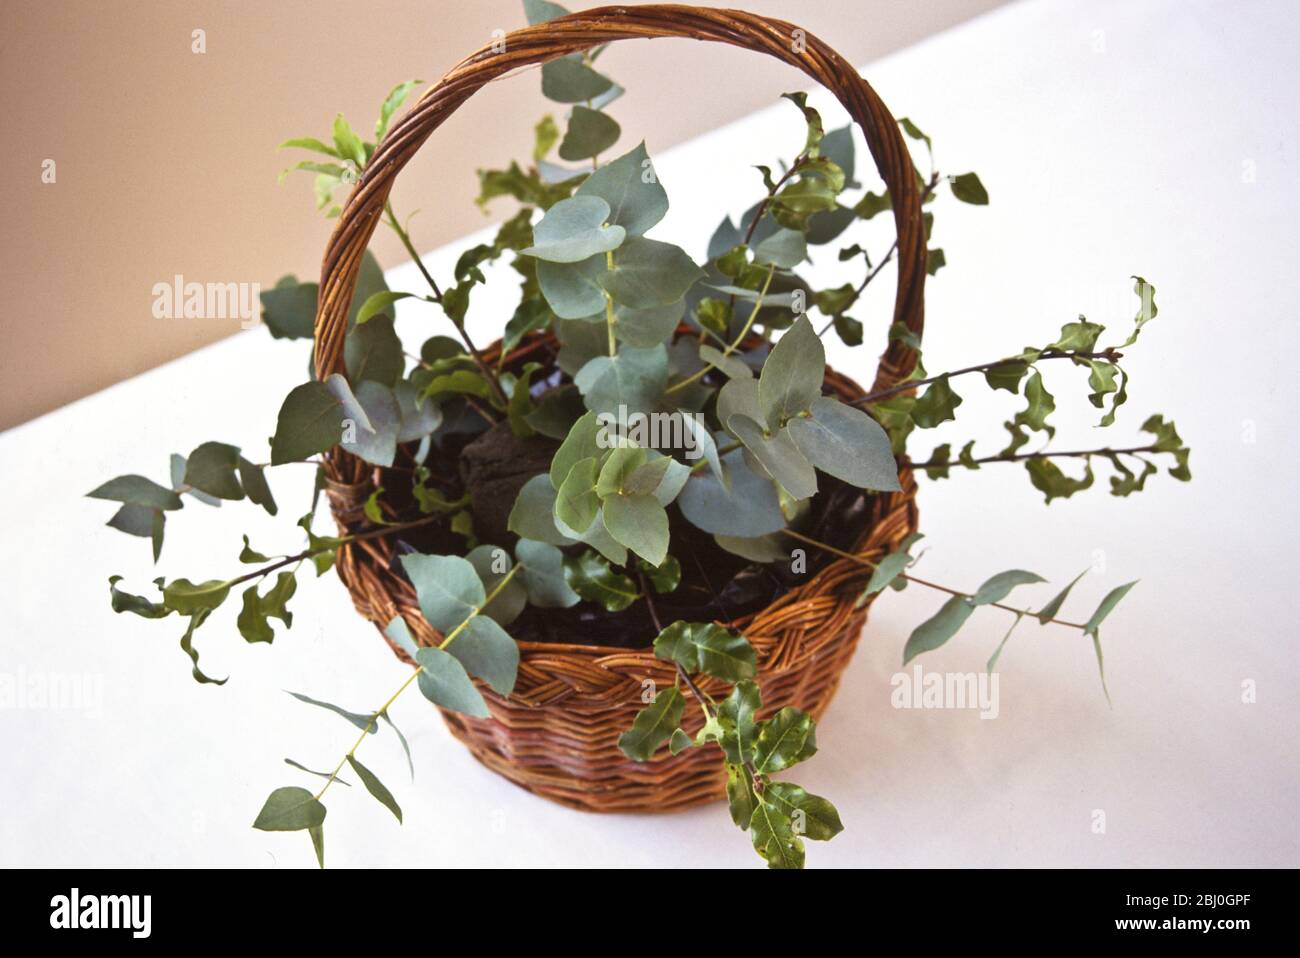 Gründung der Blumenarrangement - Eukalyptus und Grün Gsprigs in Oase in gehandelten Korb - Stockfoto